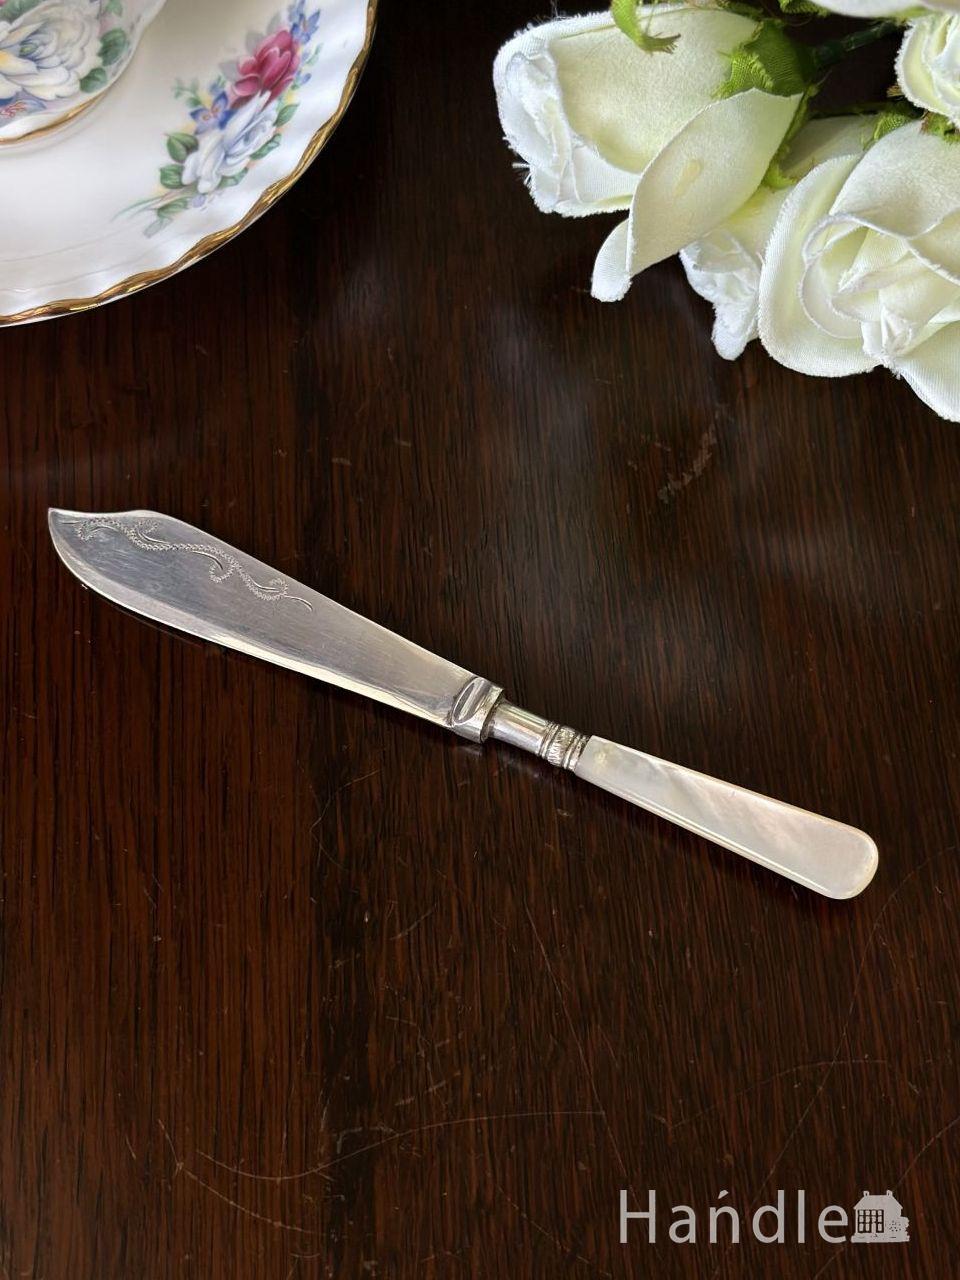 アンティーク バターナイフ ナイフ ナイフセット テーブルウェア カトラリー